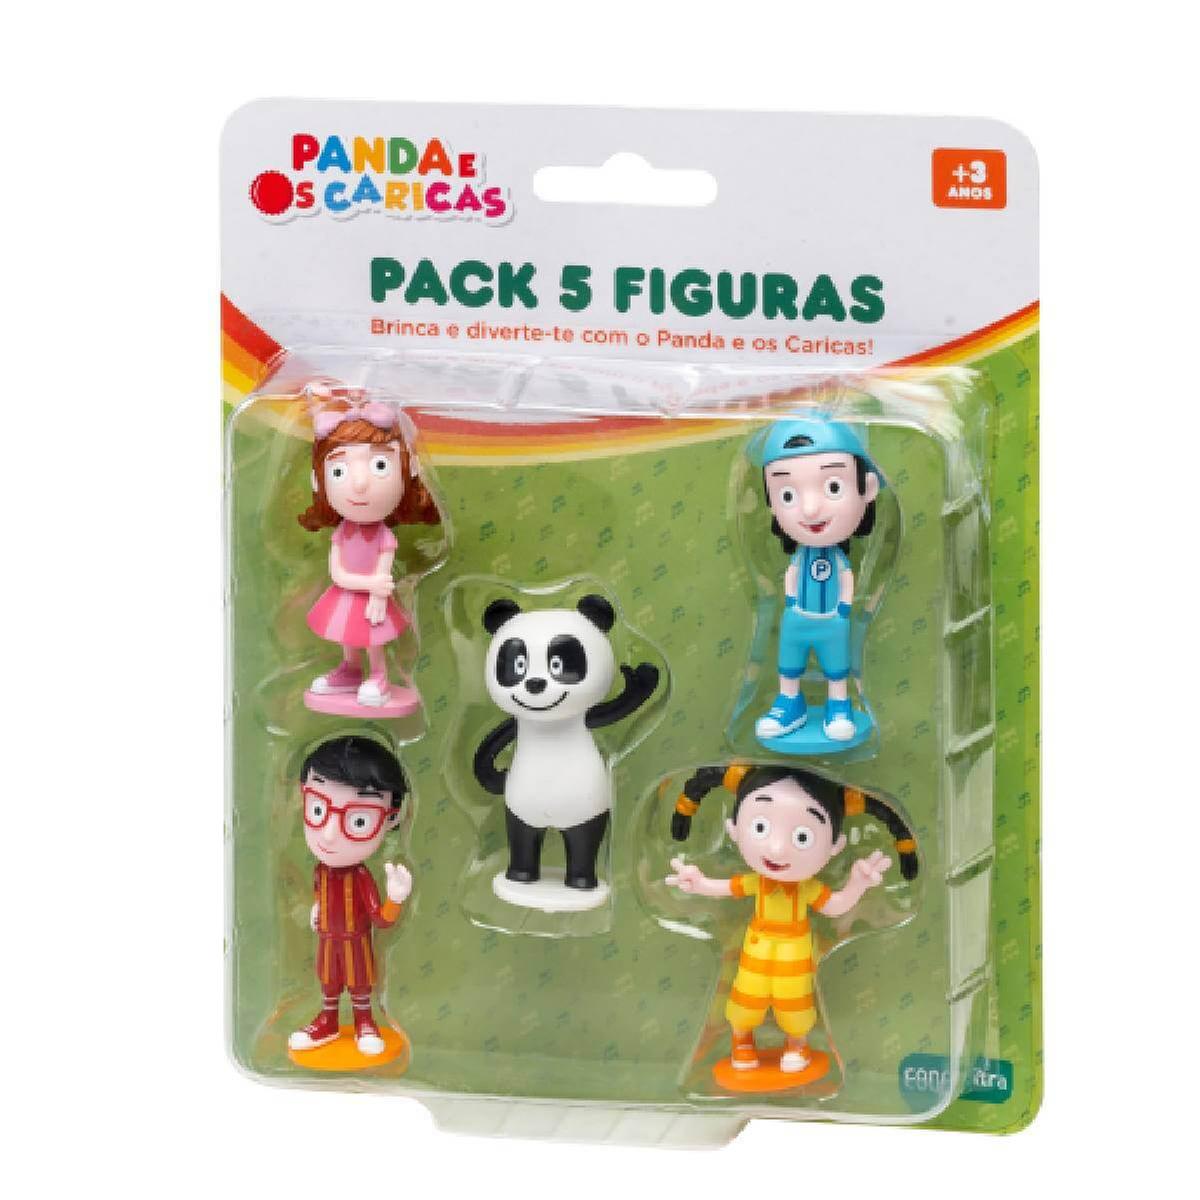 Panda - Pack Figuras Panda e os Caricas | Licenças portuguesas | Loja de  brinquedos e videojogos Online Toysrus